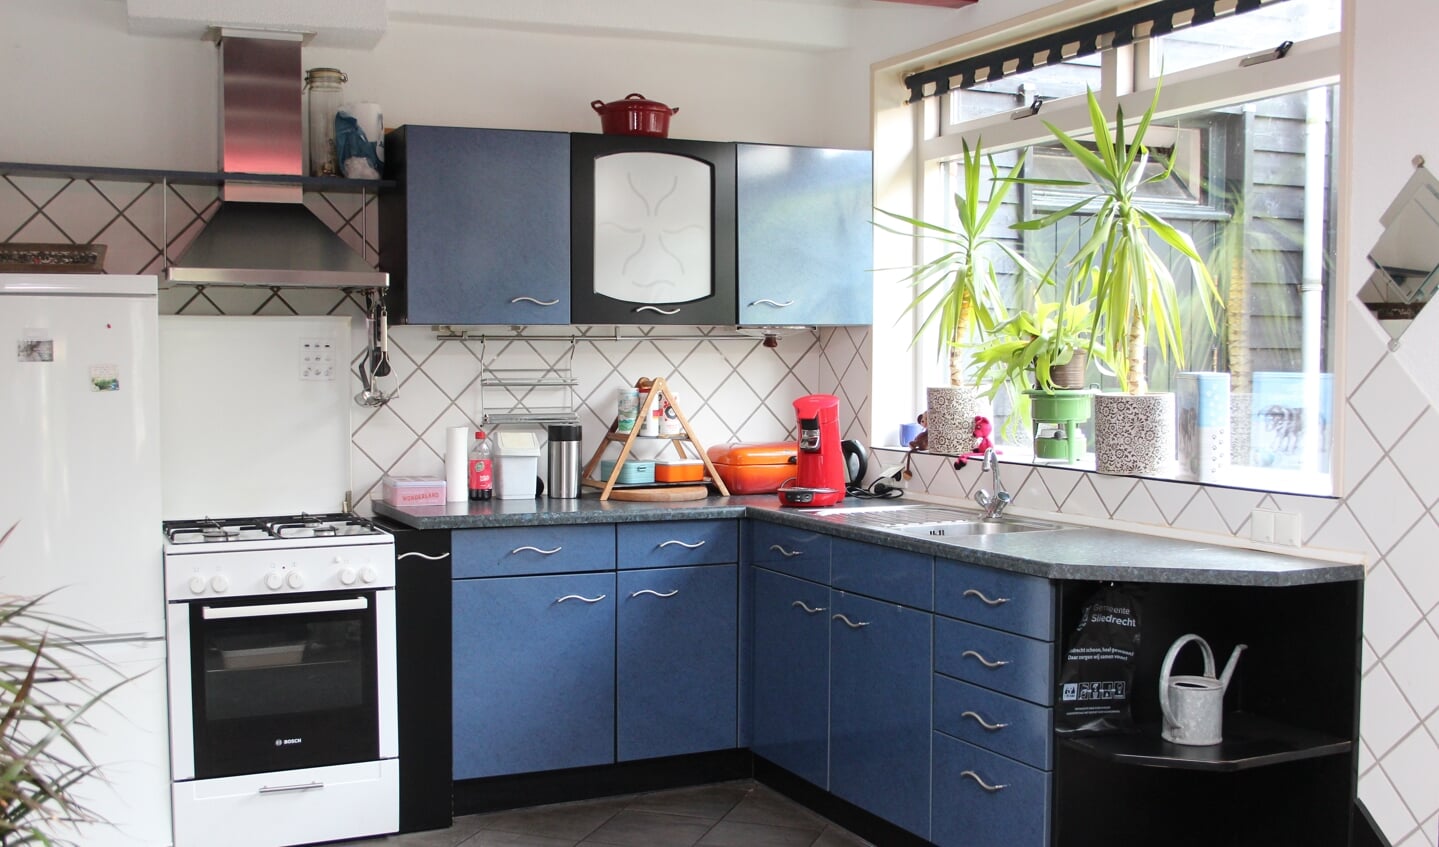 De blauwe keuken is door Jan ontworpen en vervaardigd.